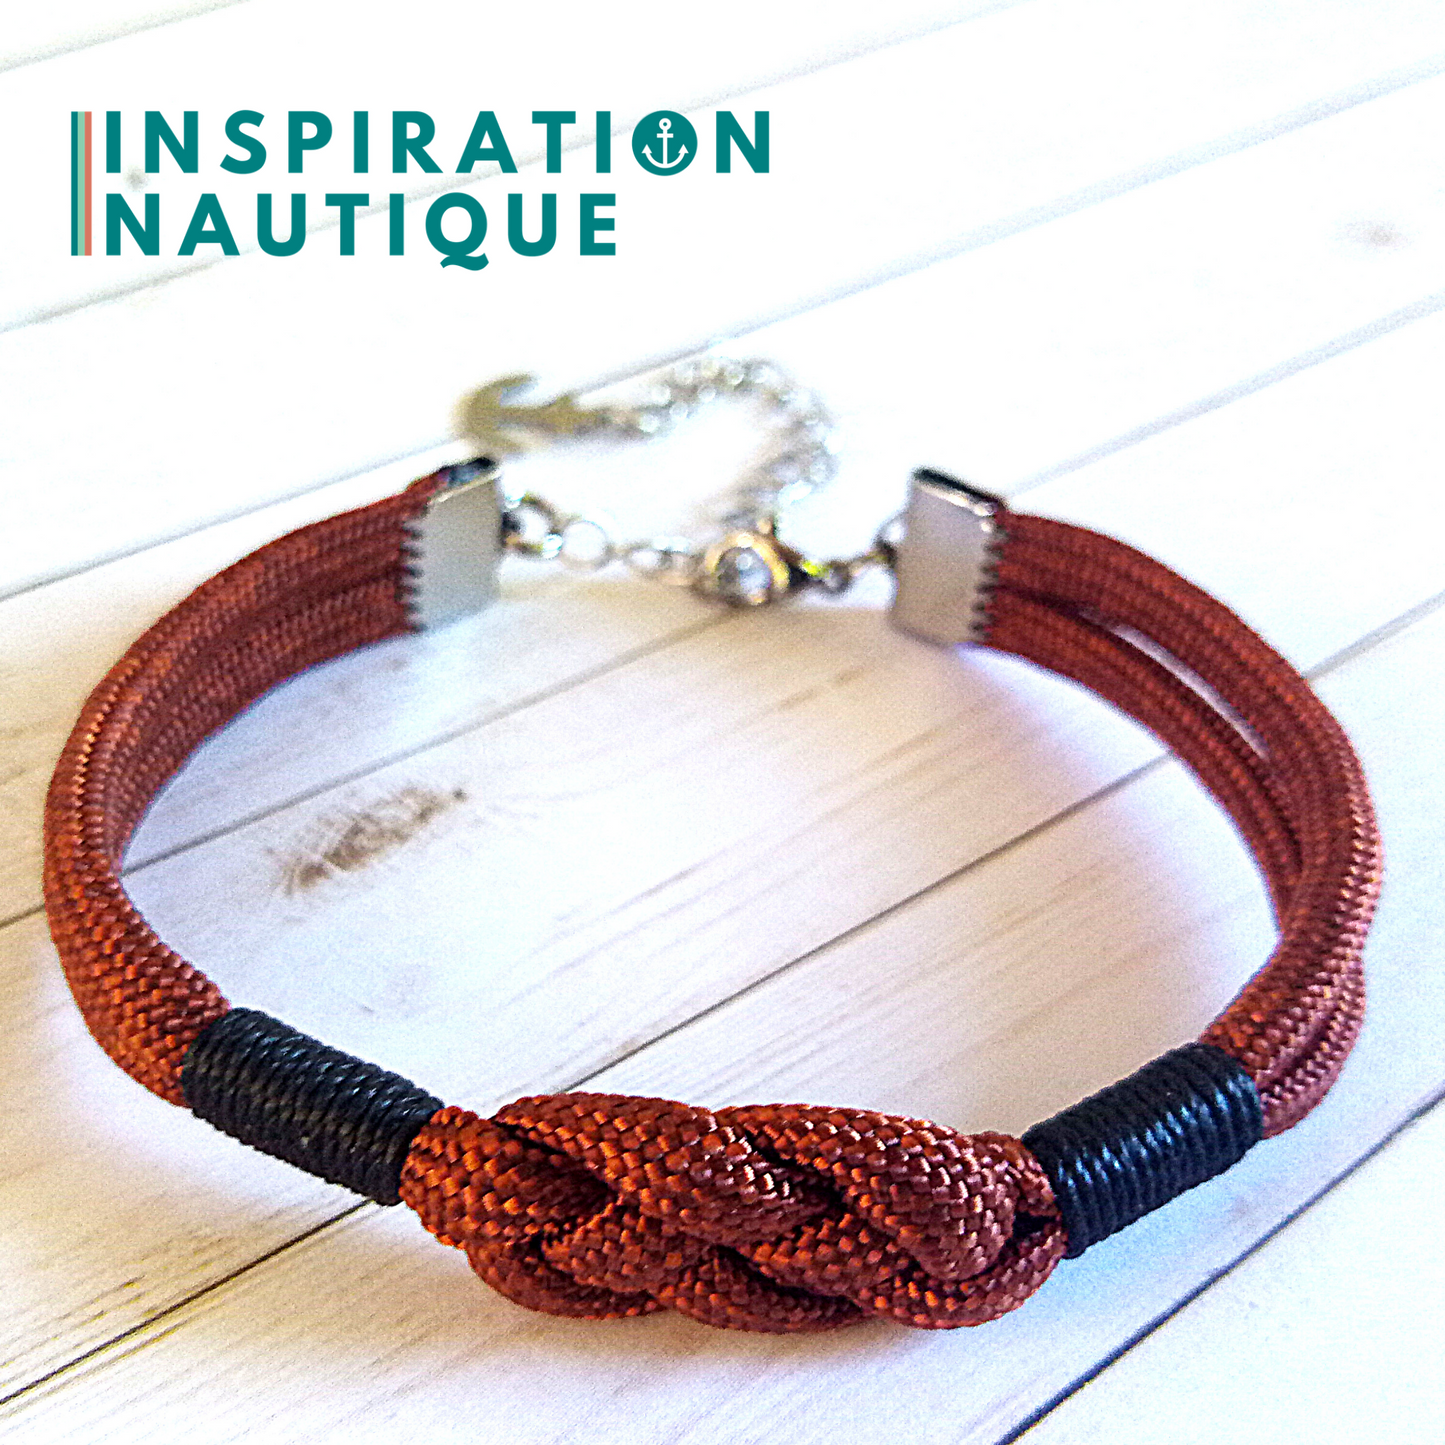 Bracelet marin avec noeud de carrick simple, en paracorde 550 et acier inoxydable, Rouille, Surliures noires, Medium